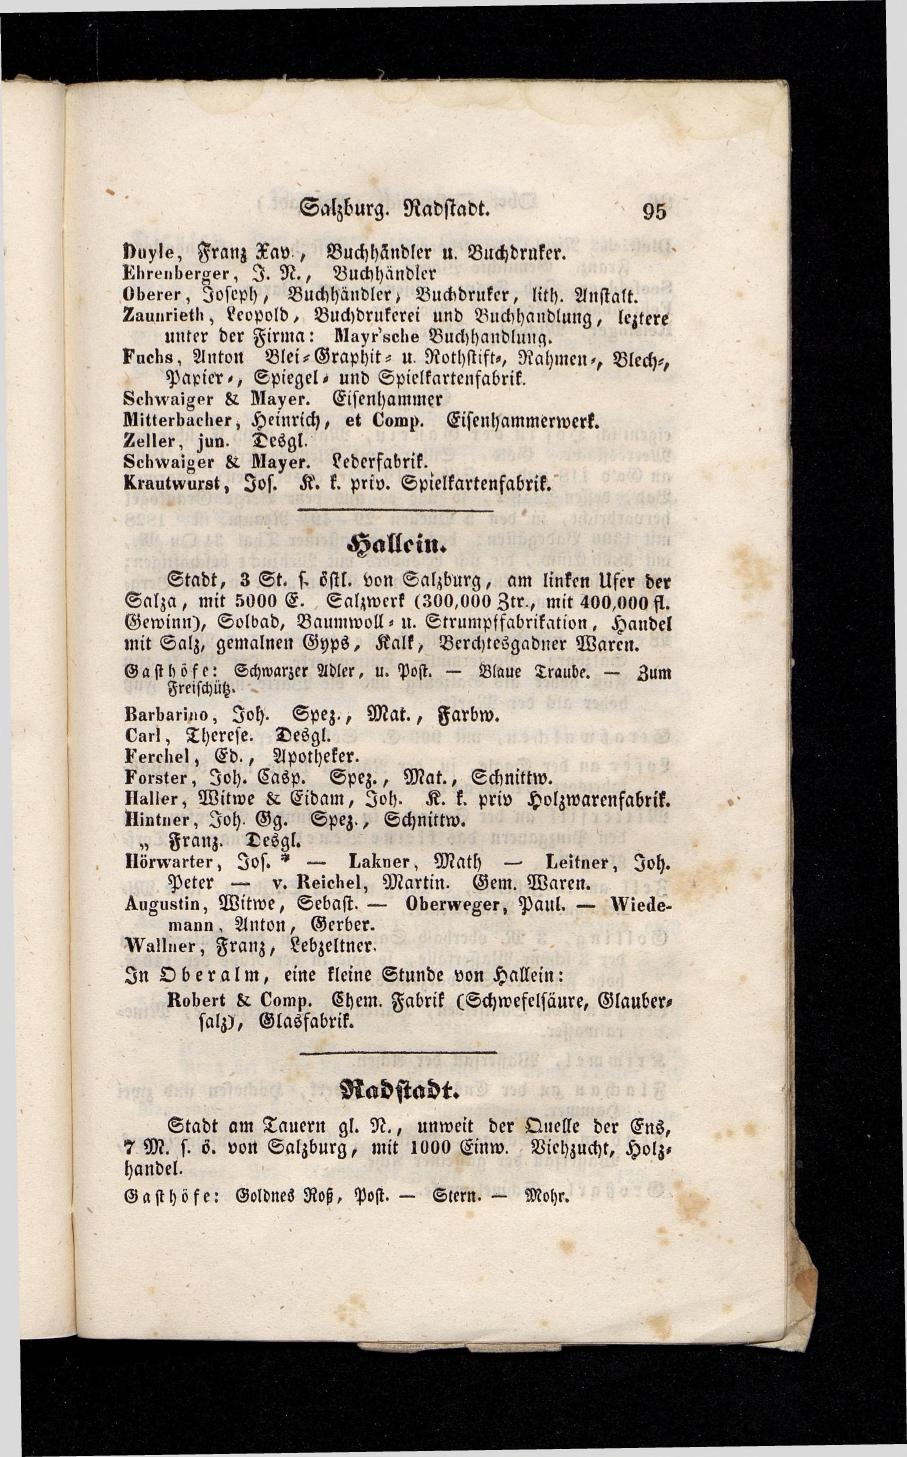 Grosses Adressbuch der Kaufleute. No. 13. Oesterreich ober u. unter der Enns 1844 - Seite 99